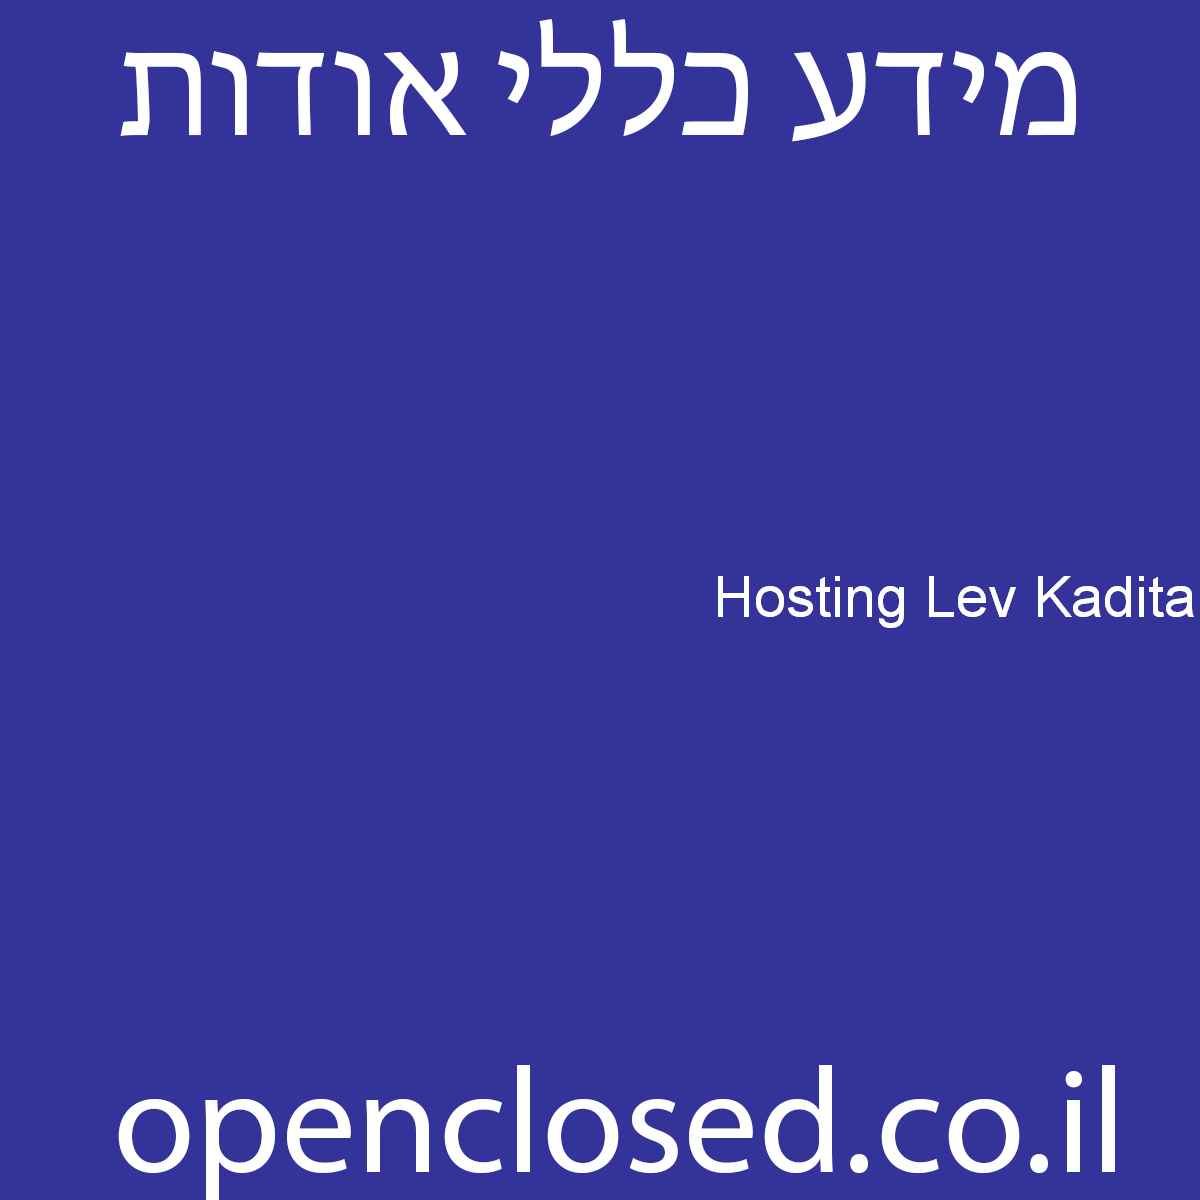 Hosting Lev Kadita